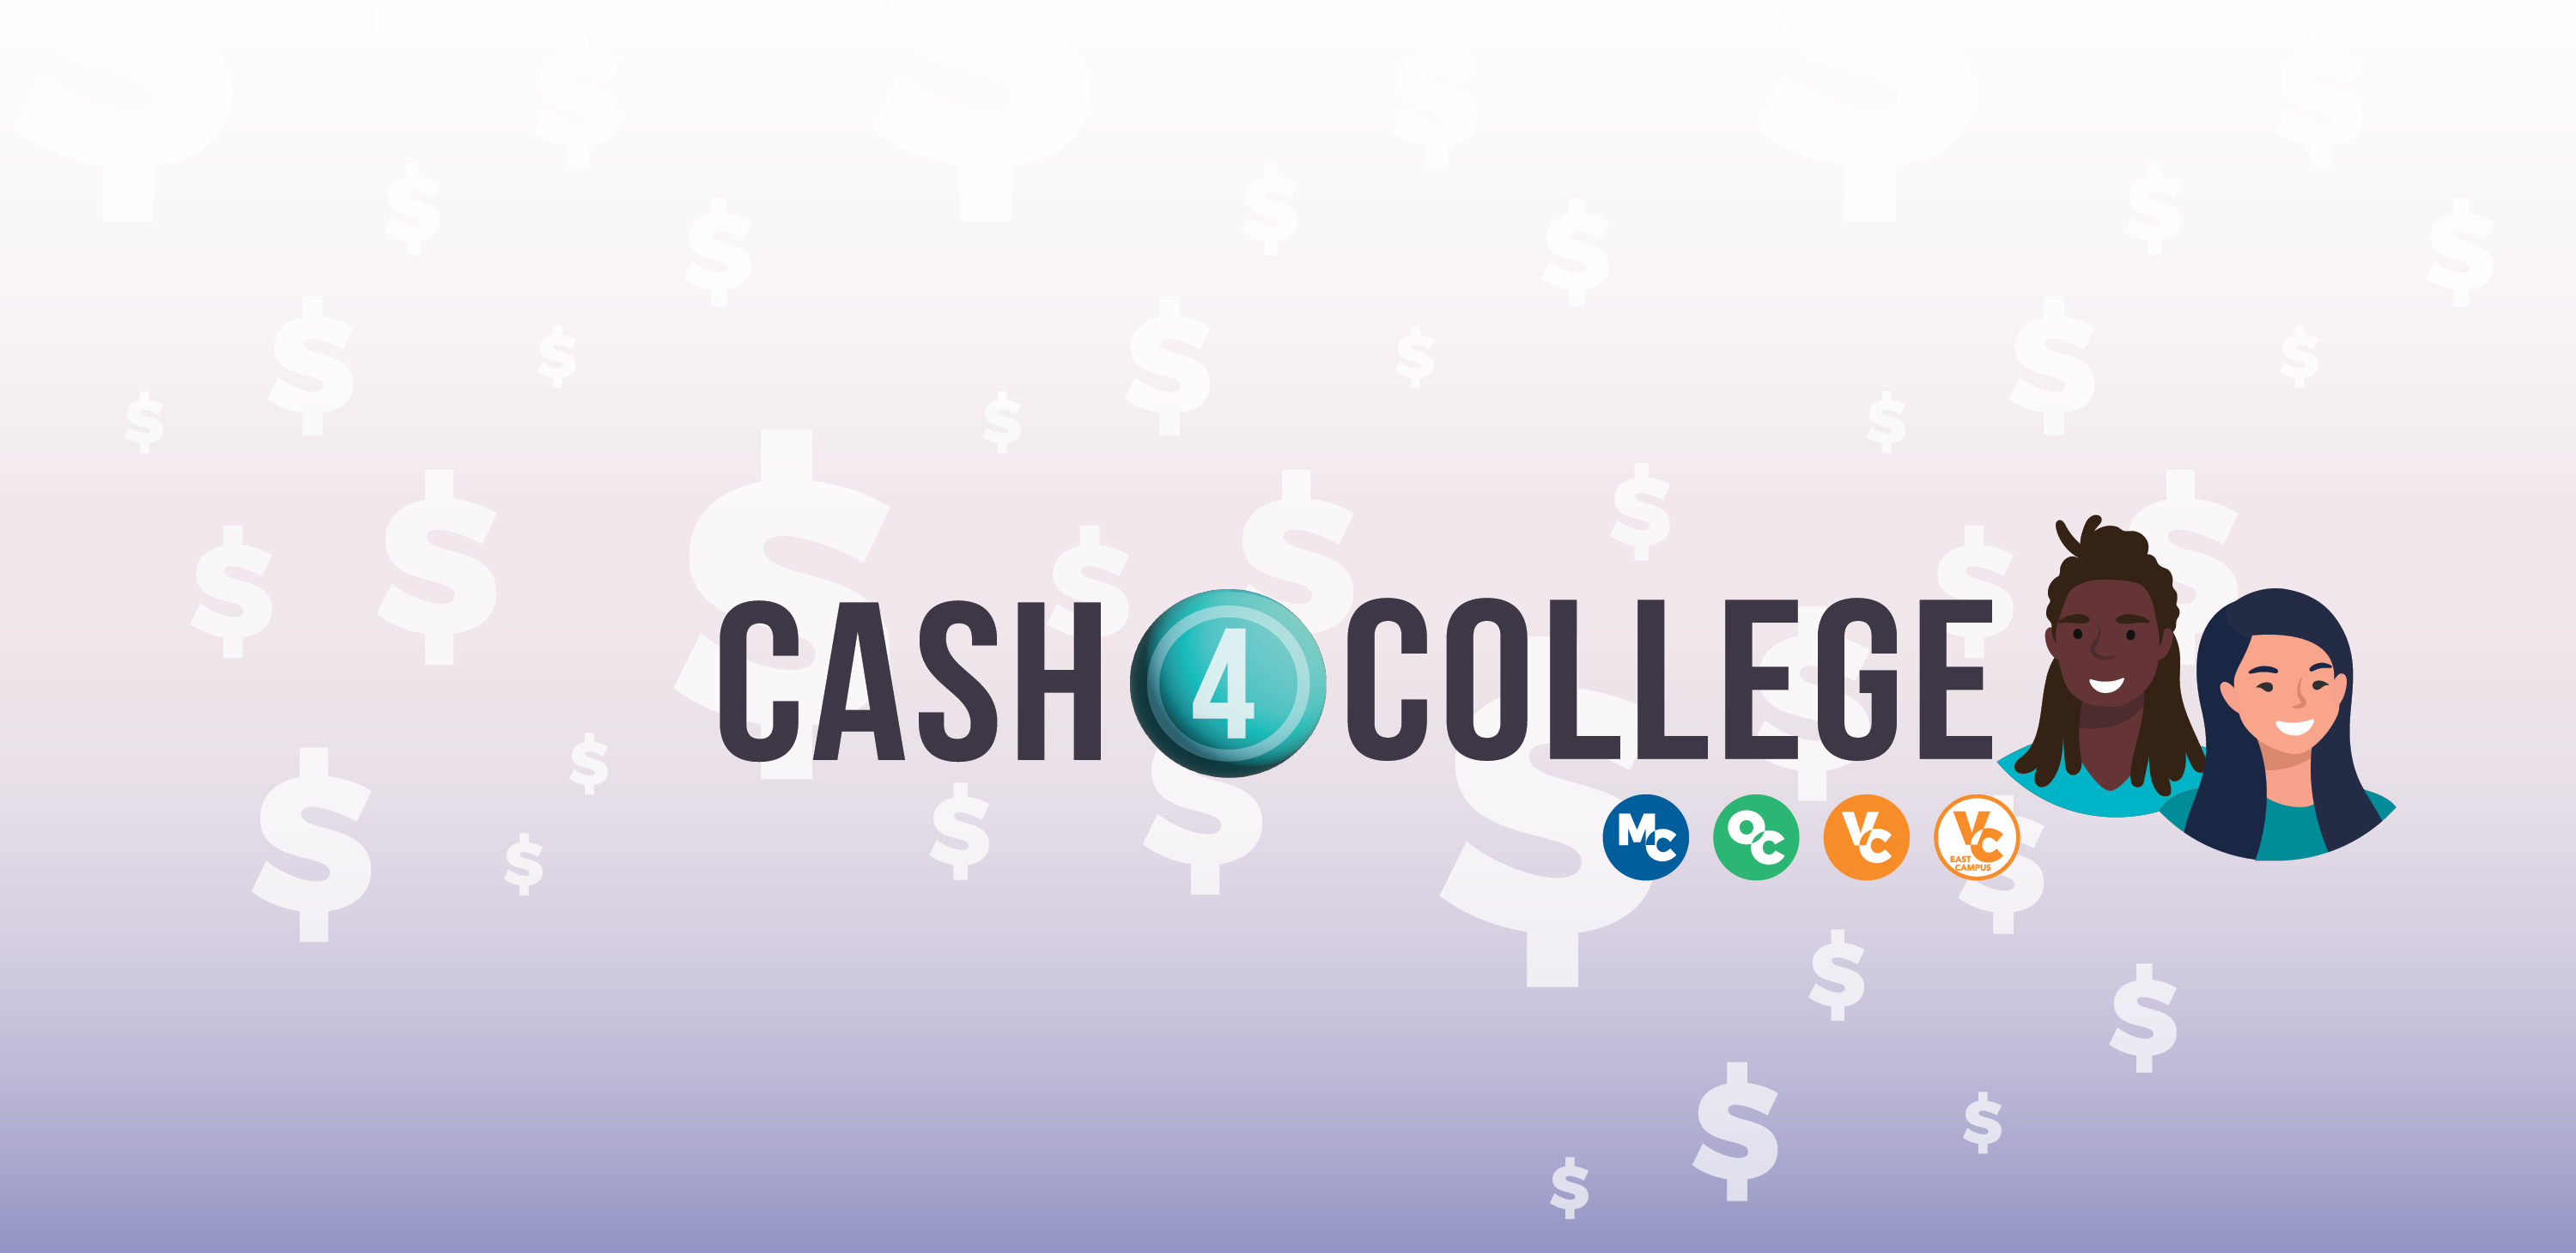 Cash 4 College